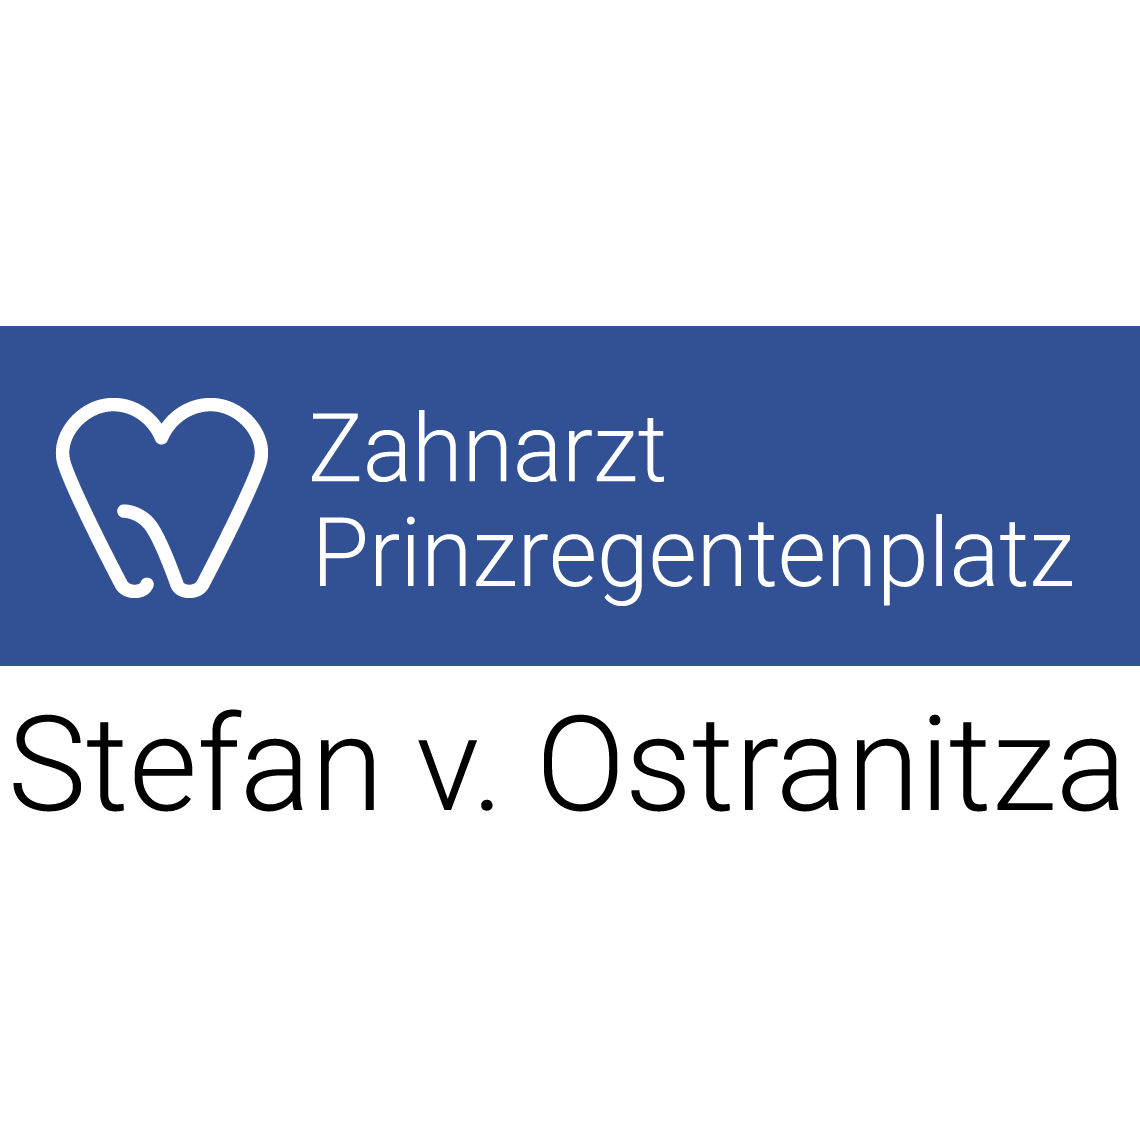 Zahnarztpraxis Stefan von Ostranitza Zahnarzt Zahnersatz Parodontologie München - Haidhausen in München - Logo